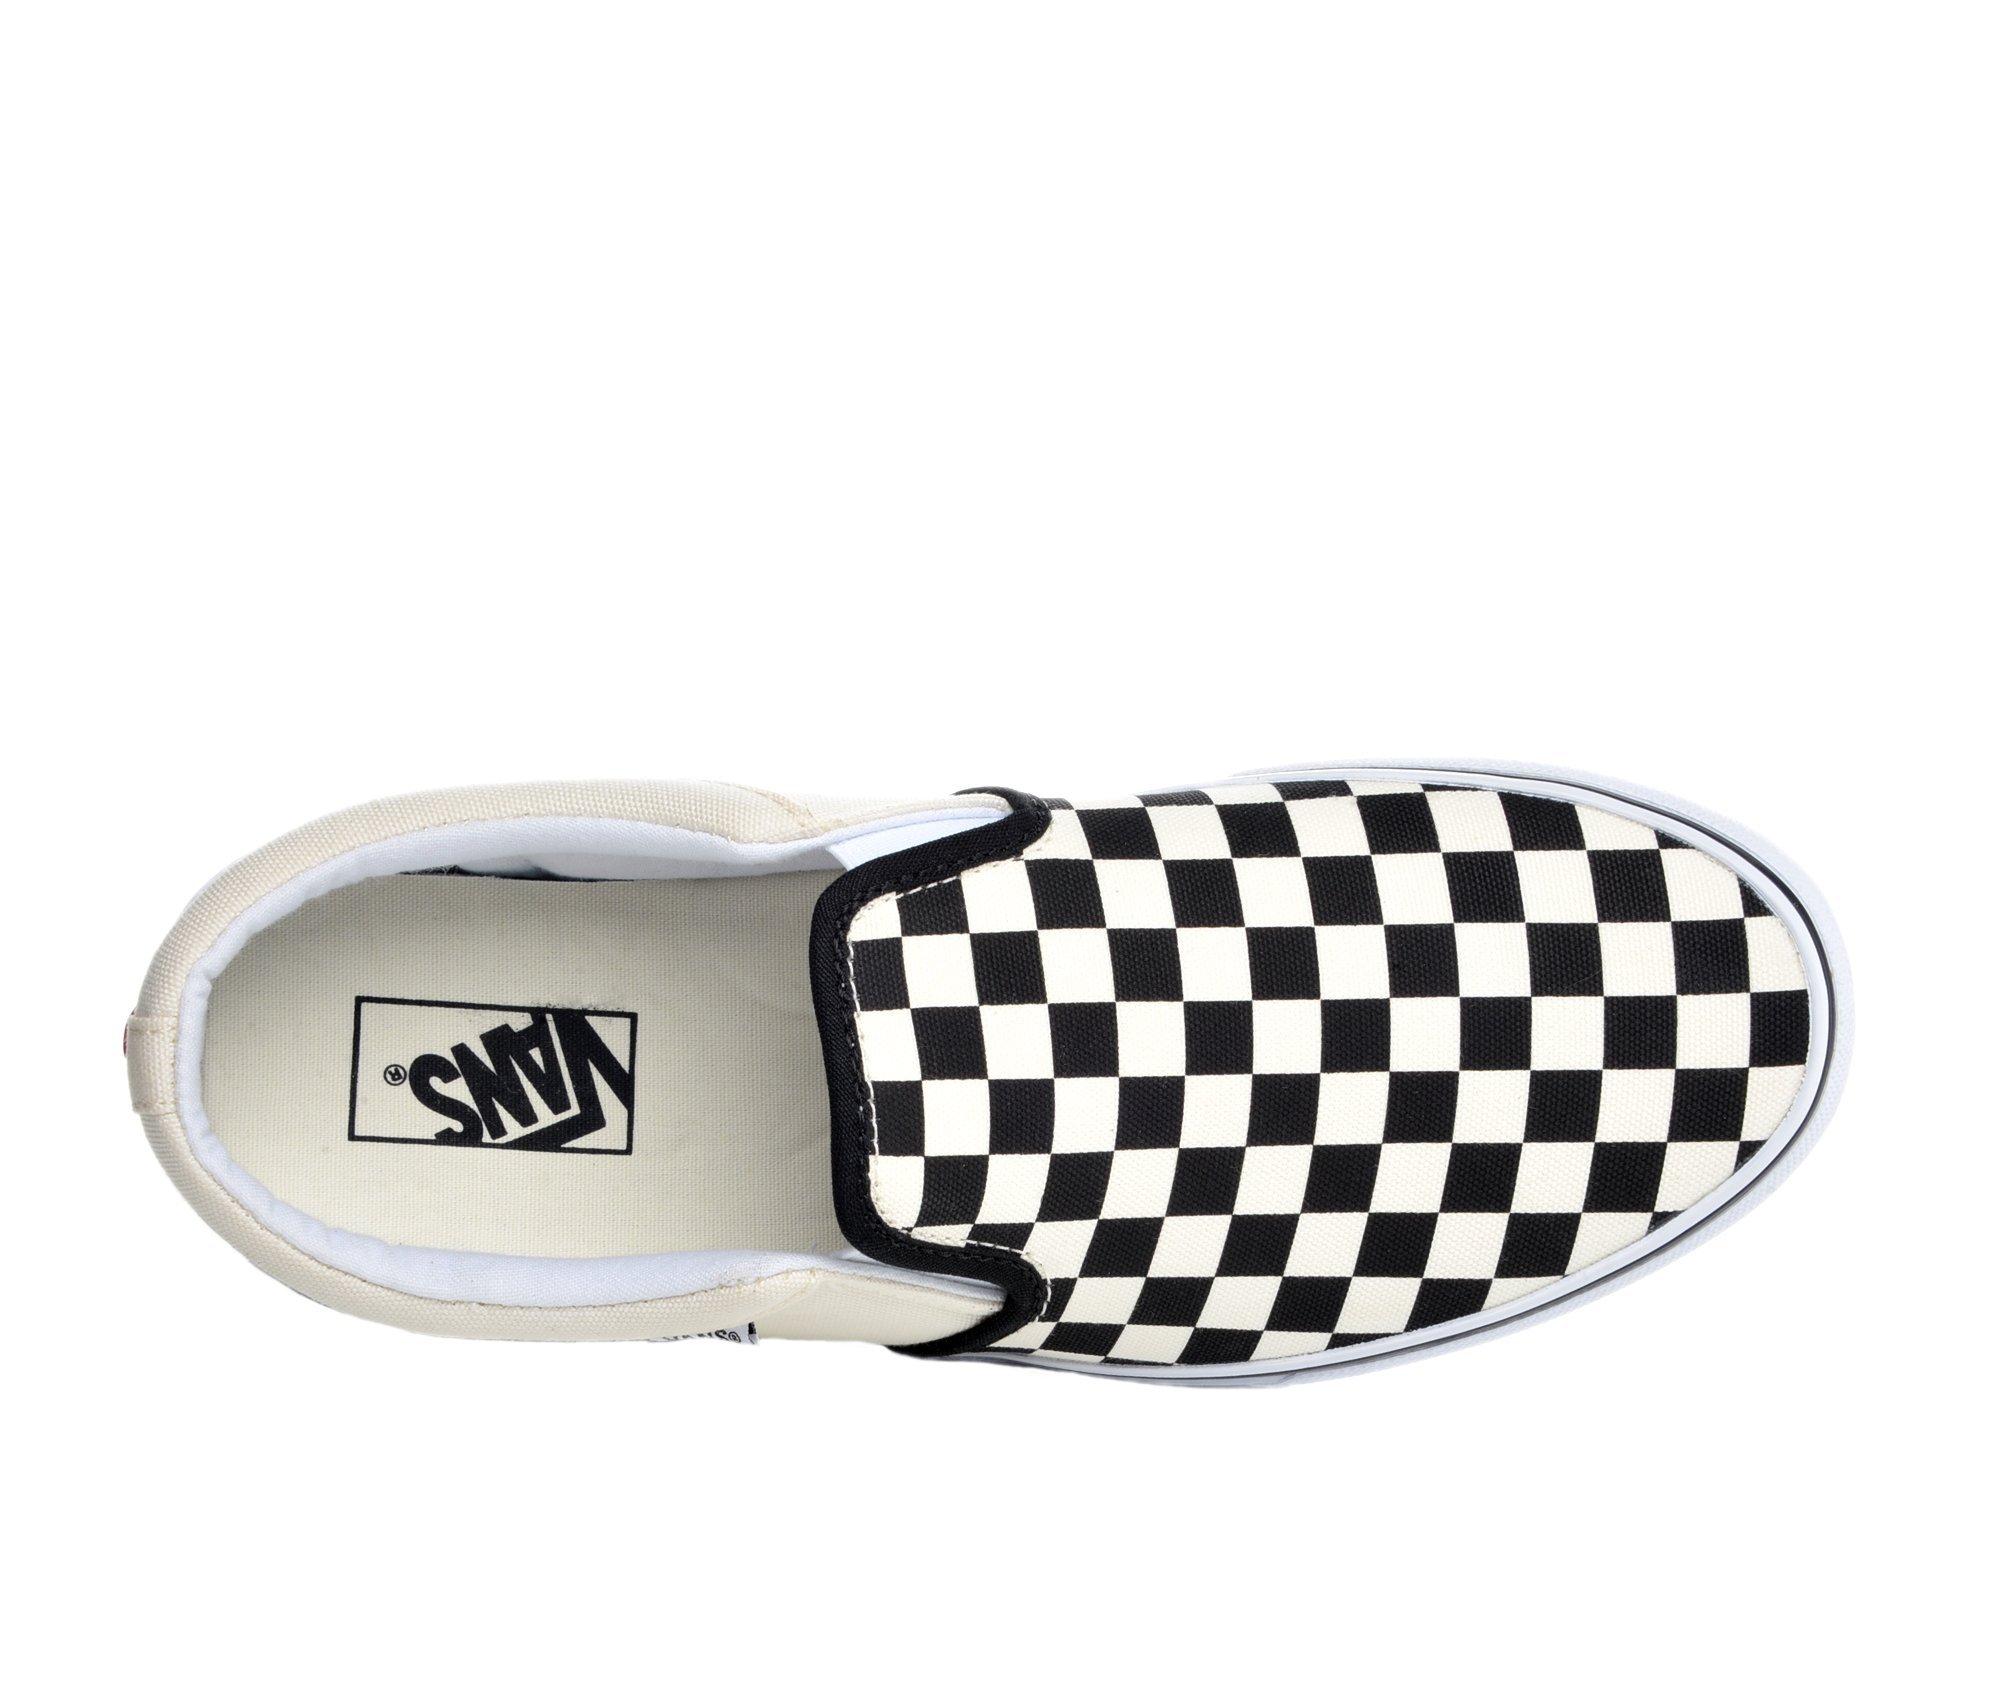 Vans Men's Asher Slip-On Shoes